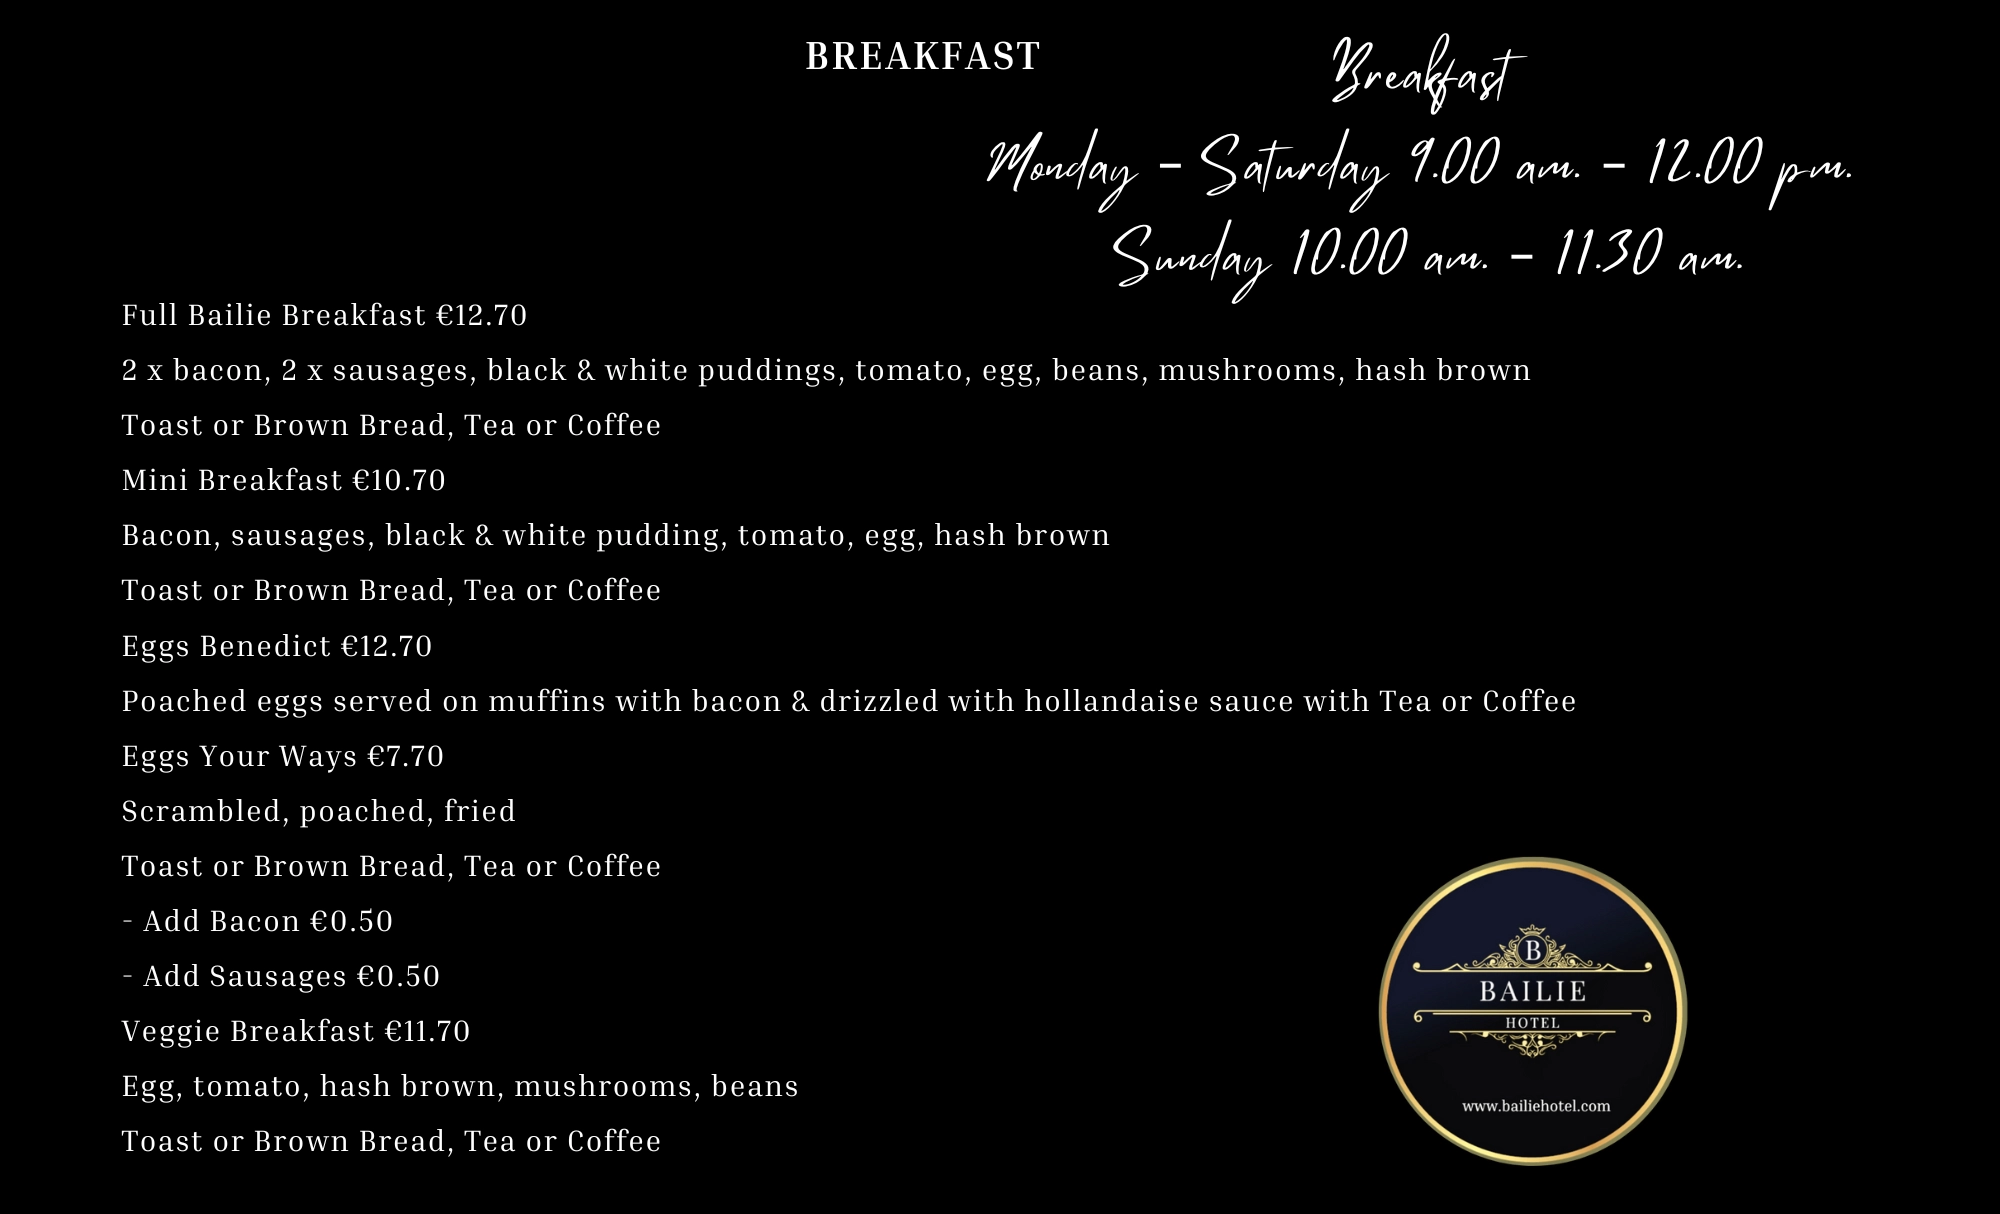 448-bailie-hotel-breakfast-menu-17150951314908.png